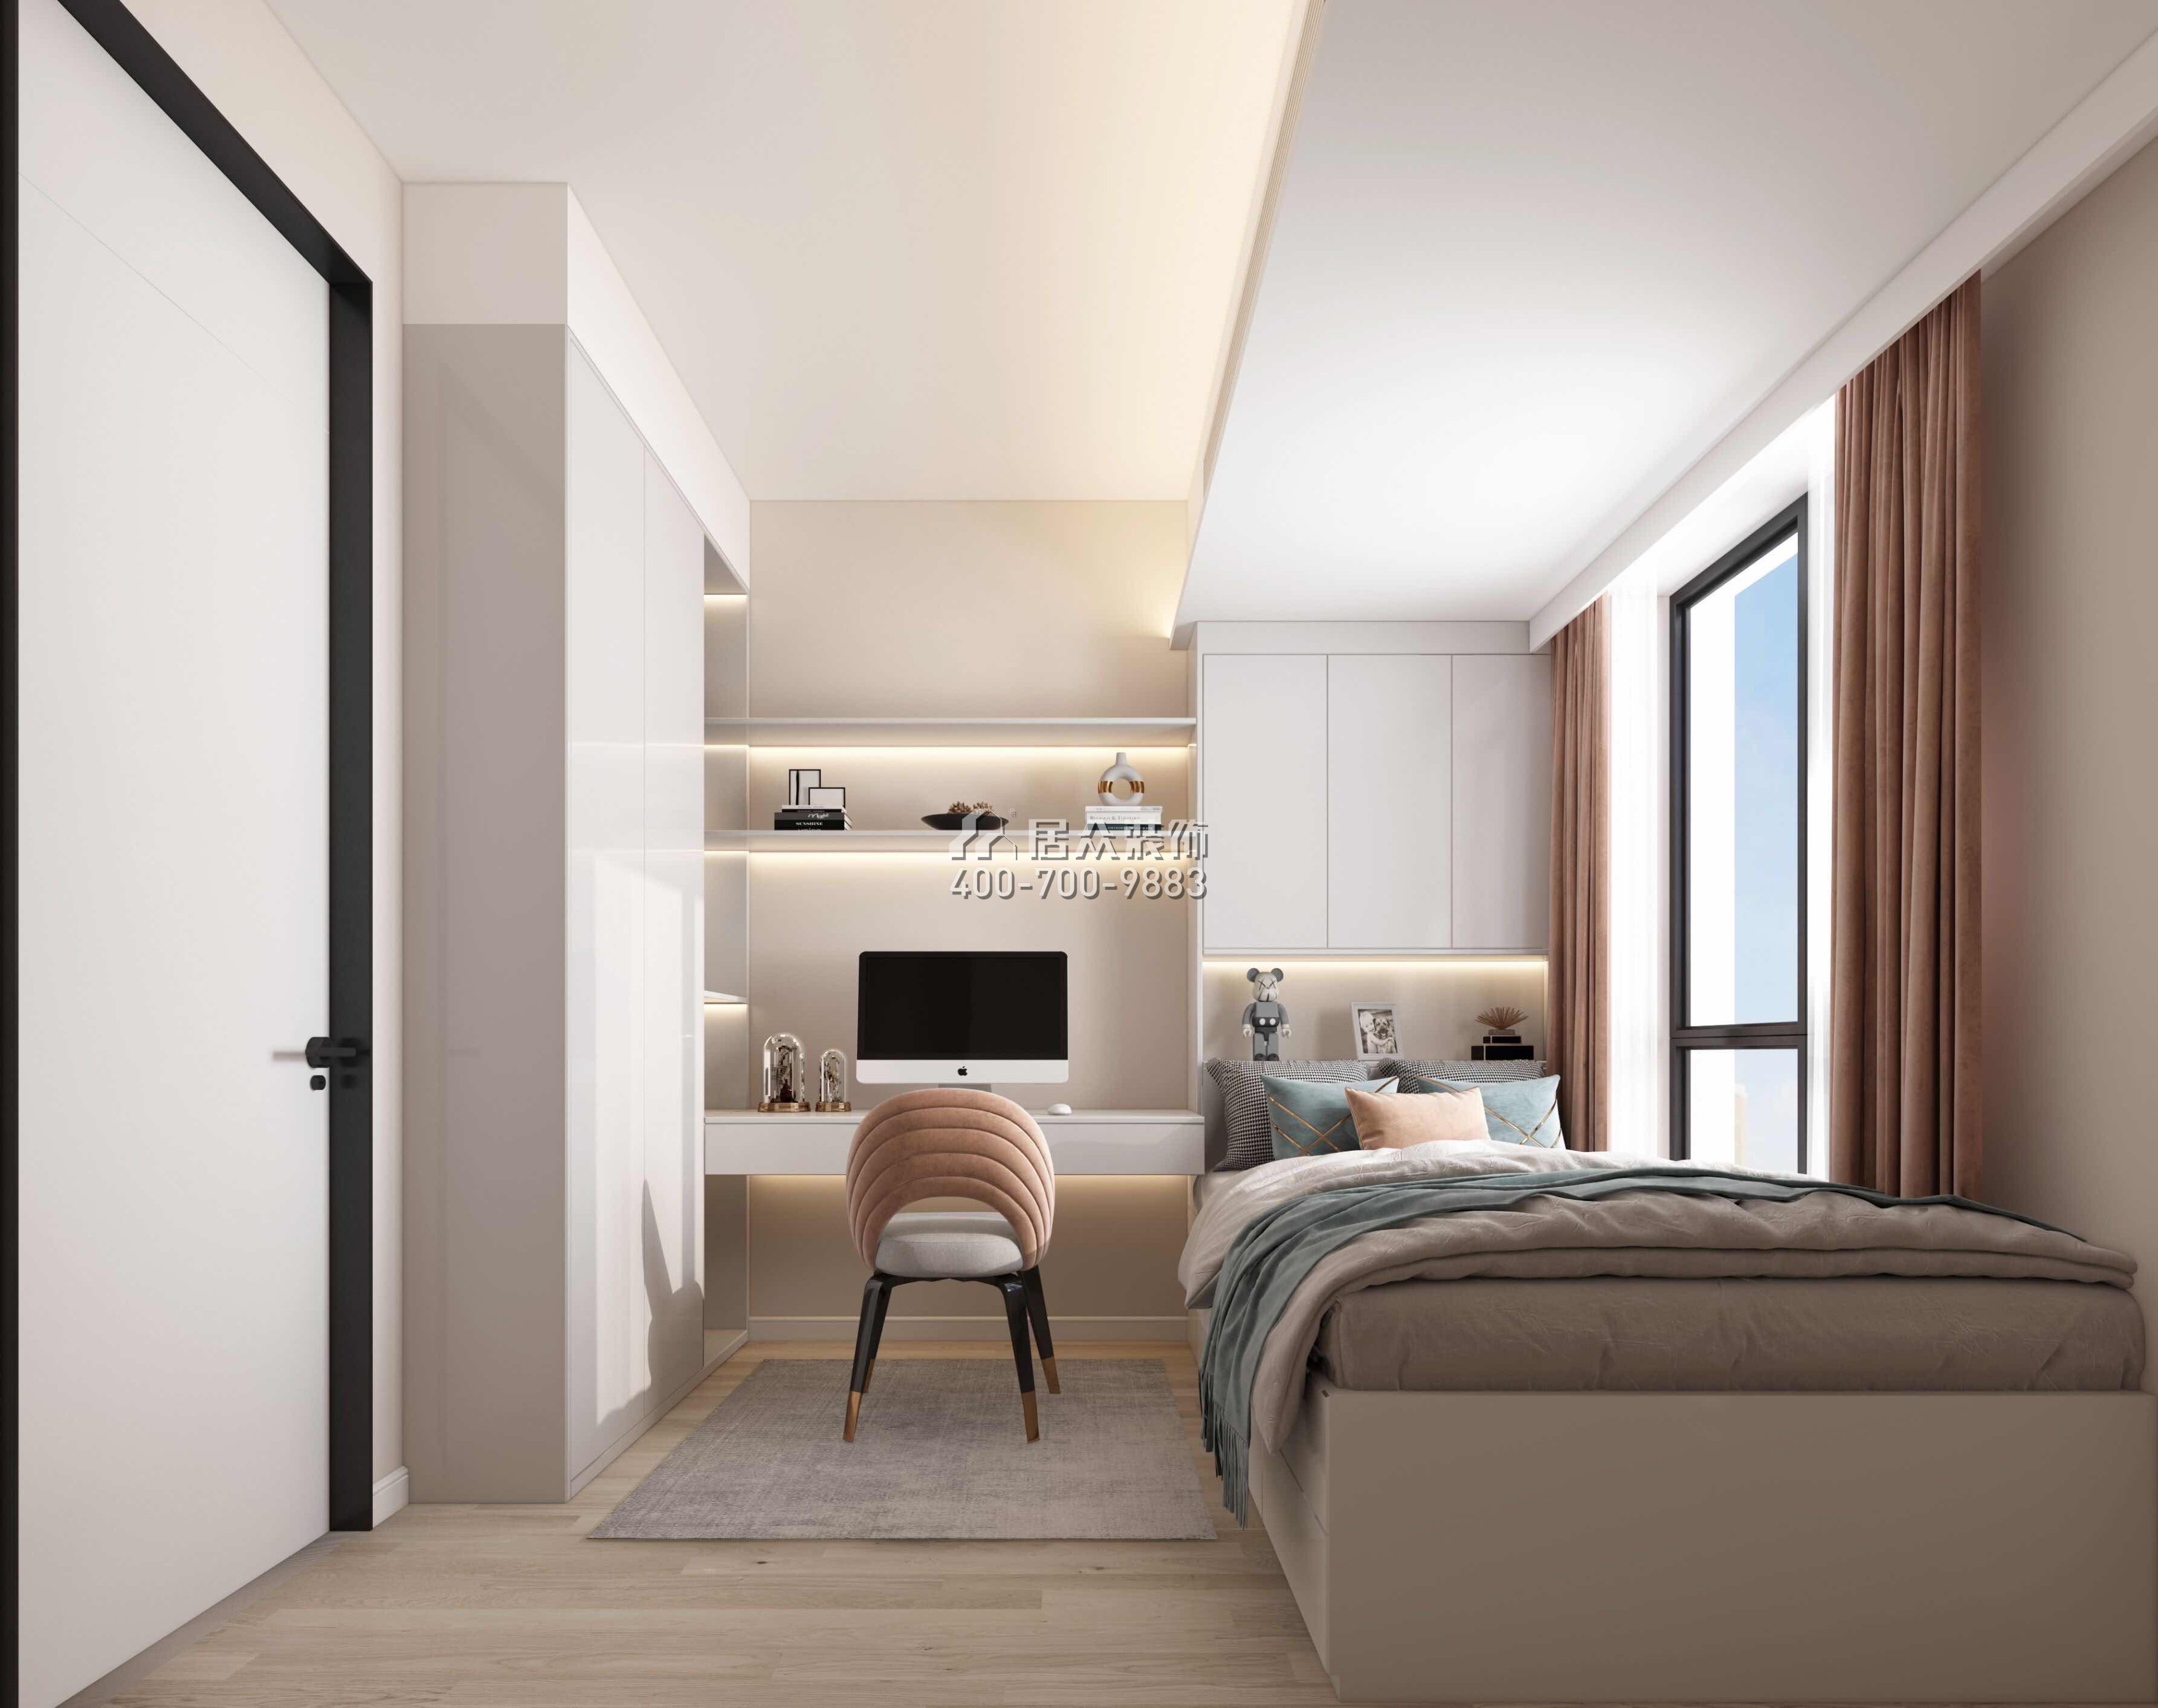 星河天地89平方米现代简约风格平层户型卧室装修效果图